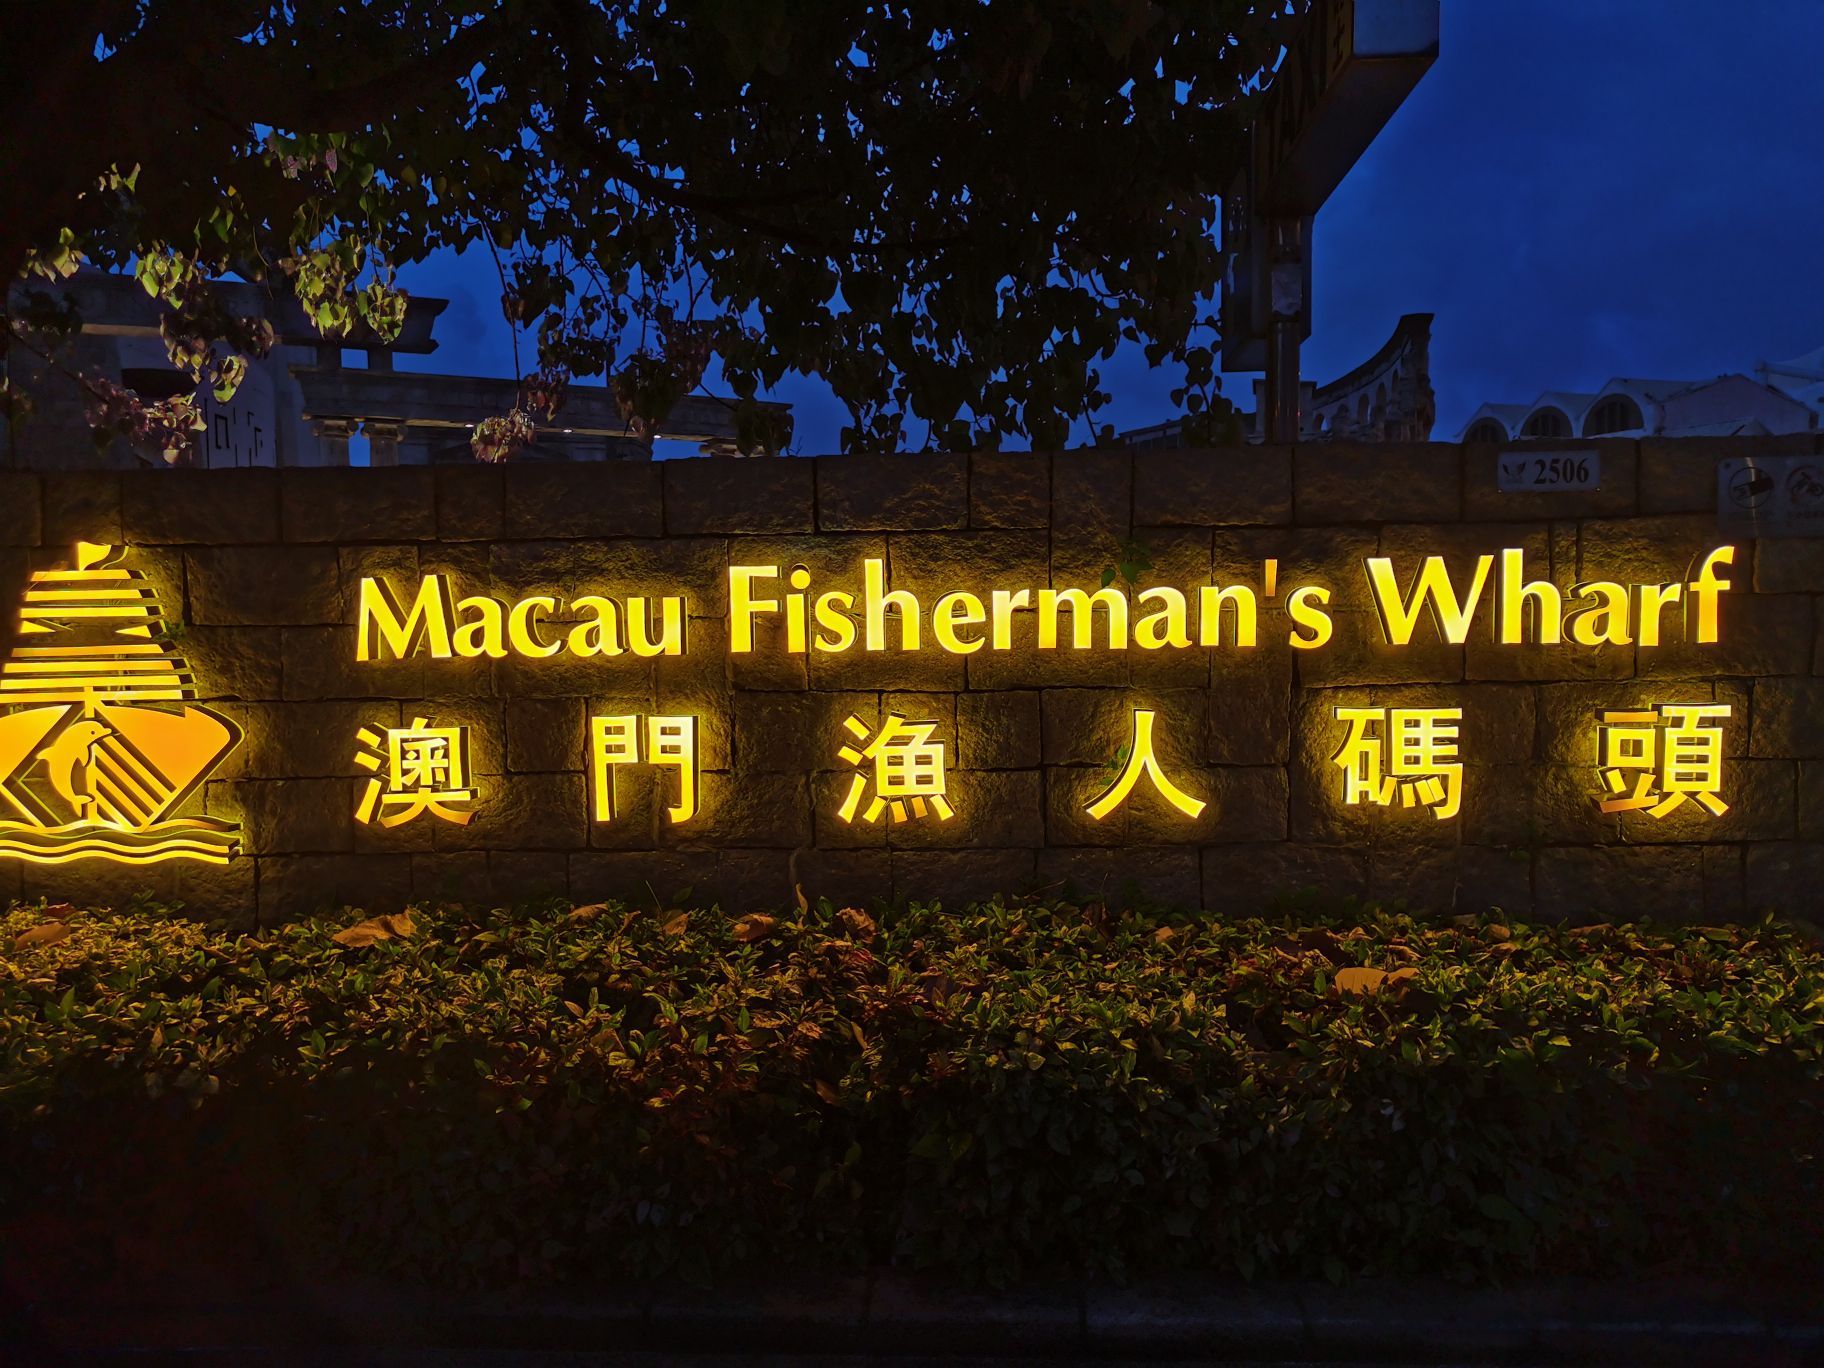 Pekerja Fisherman’s Wharf Macau Hadapi Pemecatan, Lebih Banyak Potongan Dijangka